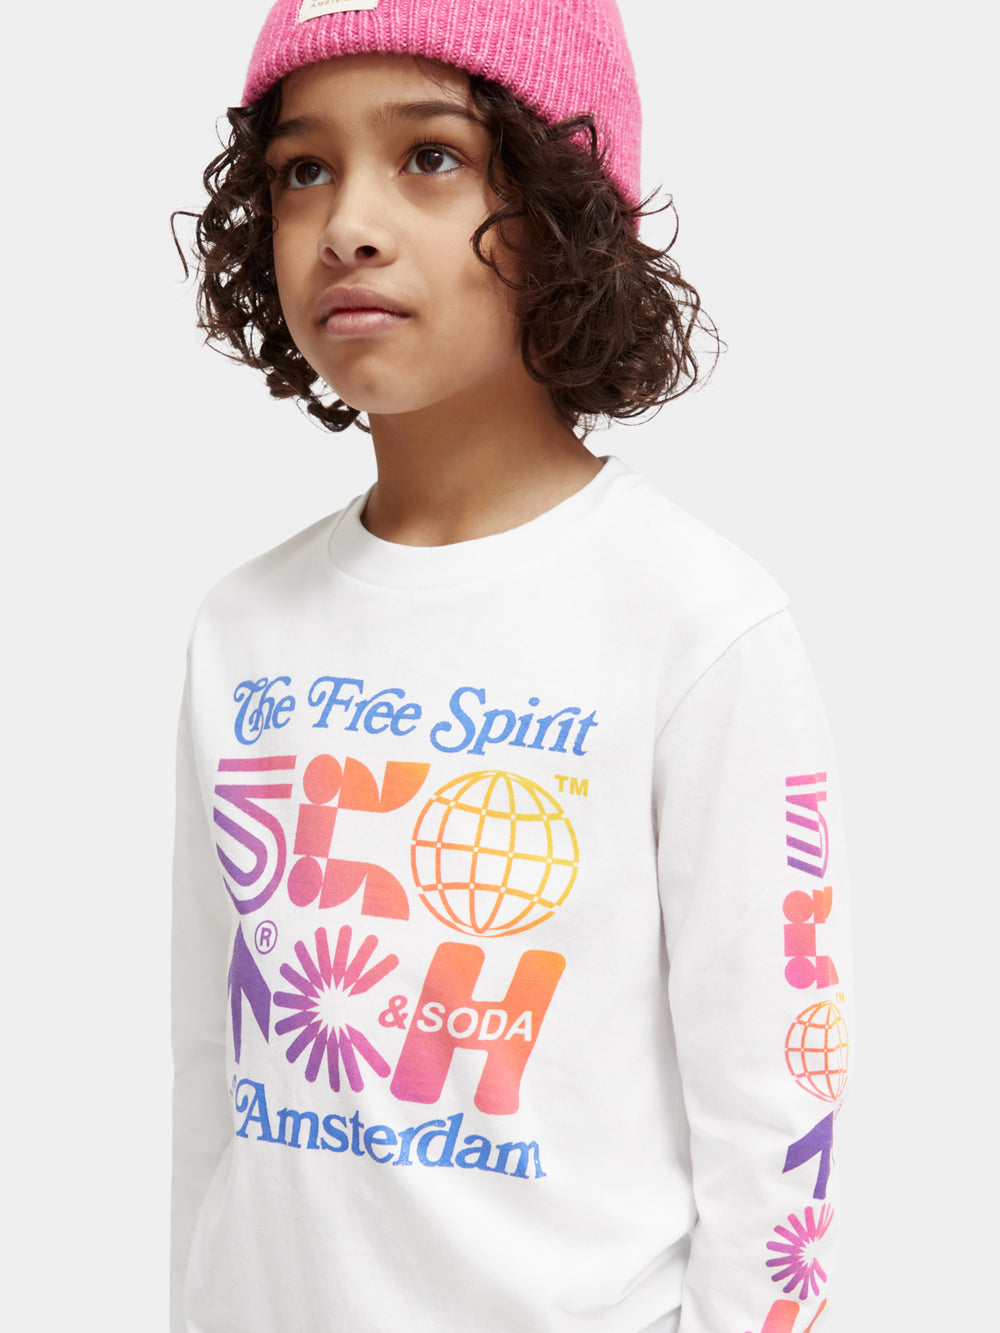 Kids - Long-sleeved artwork t-shirt - Scotch & Soda NZ